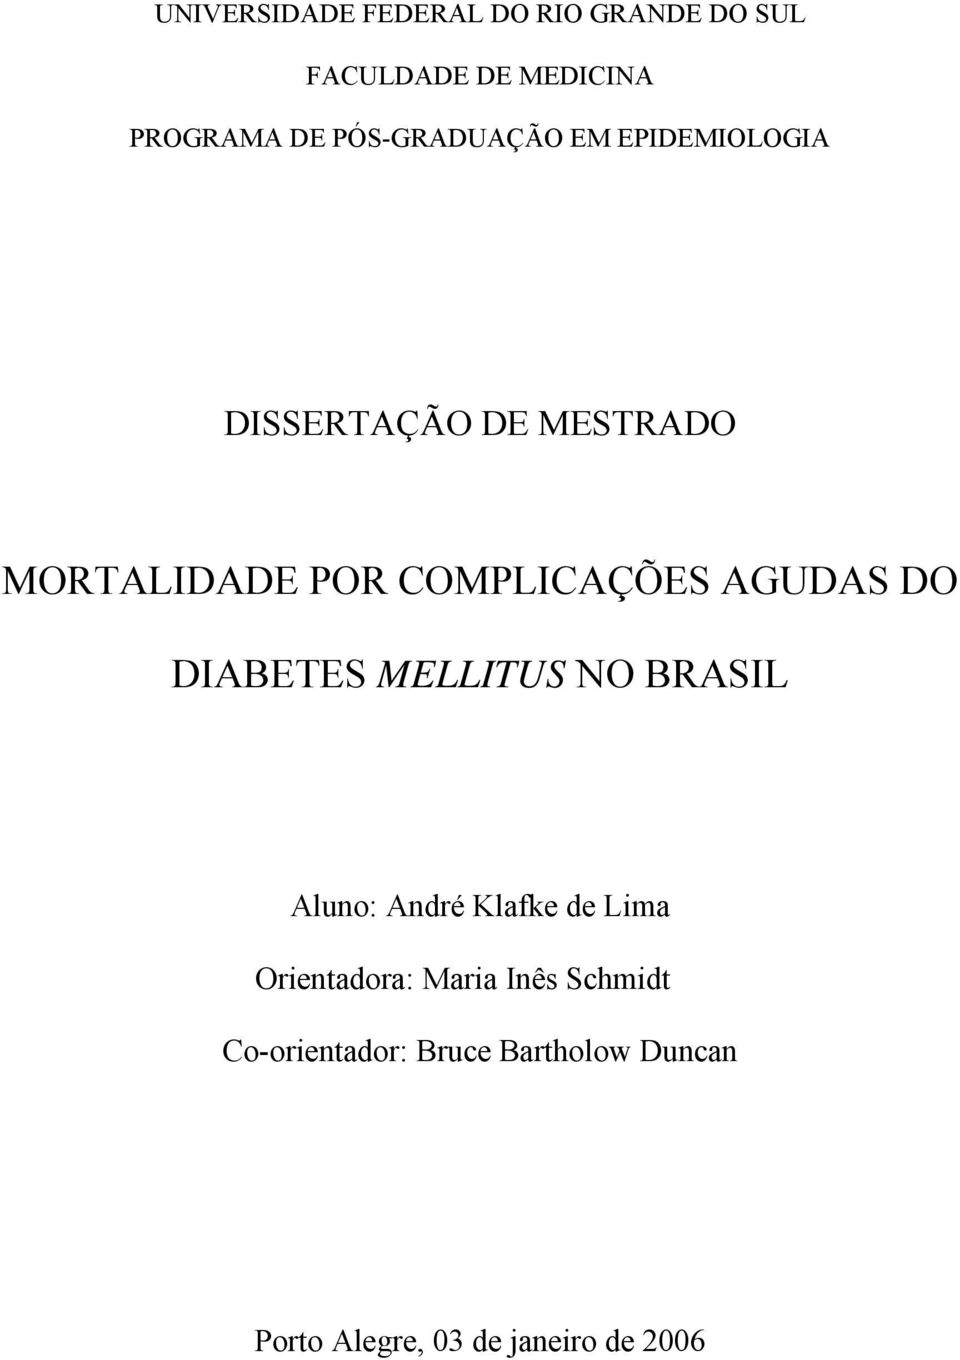 COMPLICAÇÕES AGUDAS DO DIABETES MELLITUS NO BRASIL Aluno: André Klafke de Lima